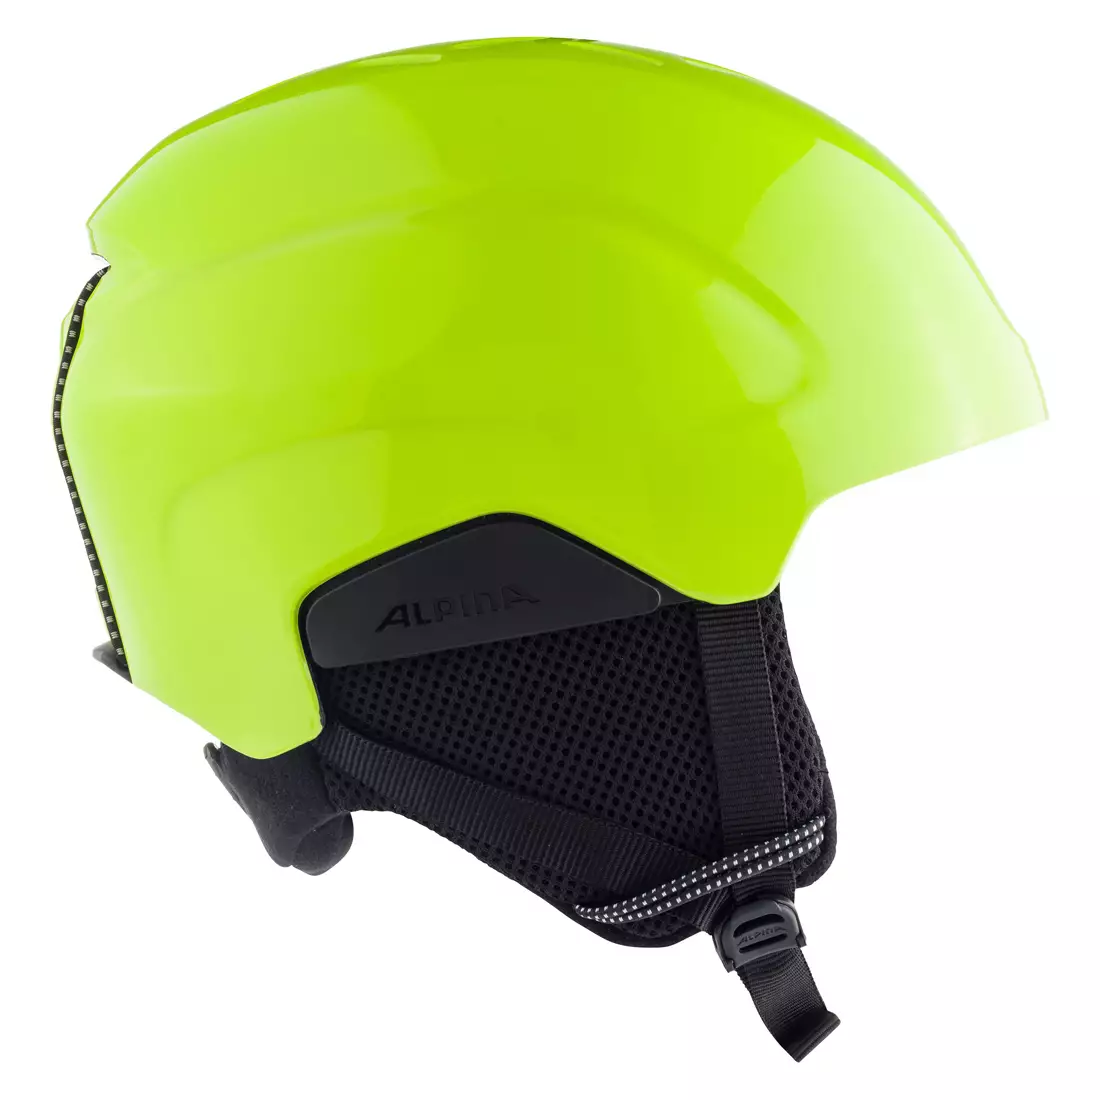 ALPINA PIZI dětská lyžařská/snowboardová helma, neon-yellow matt